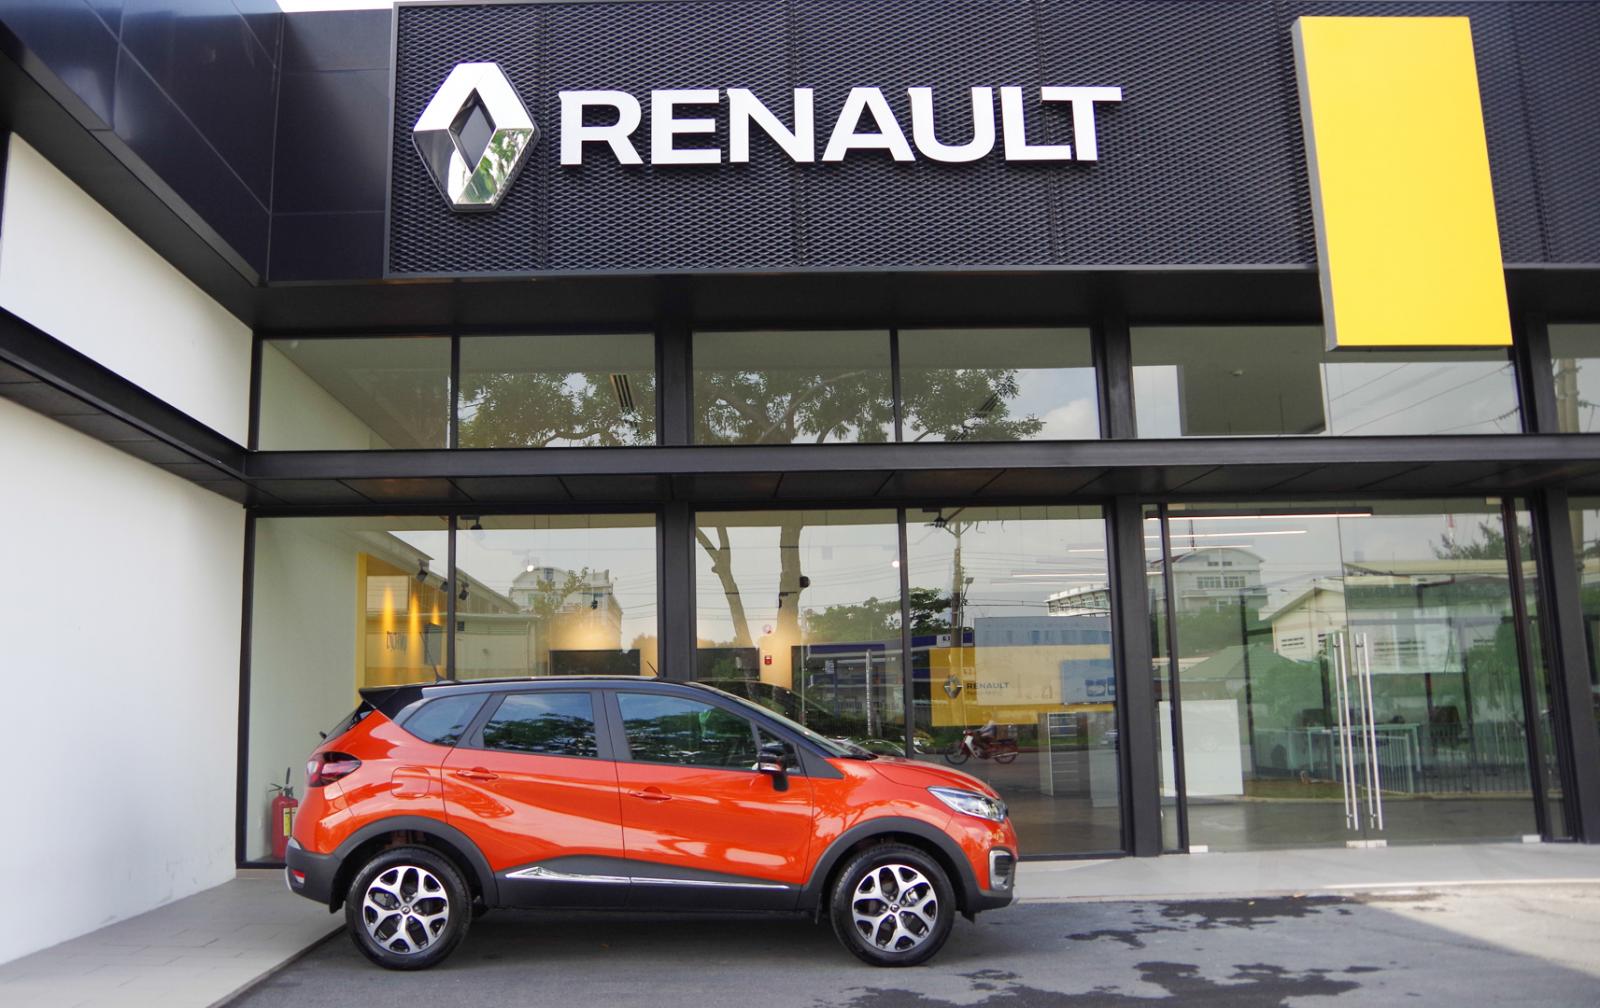 Renault Renault khác Kaptur 2020 - Renault Kaptur nâu cam xe Pháp nhập khẩu nguyên chiếc, giao xe ngay